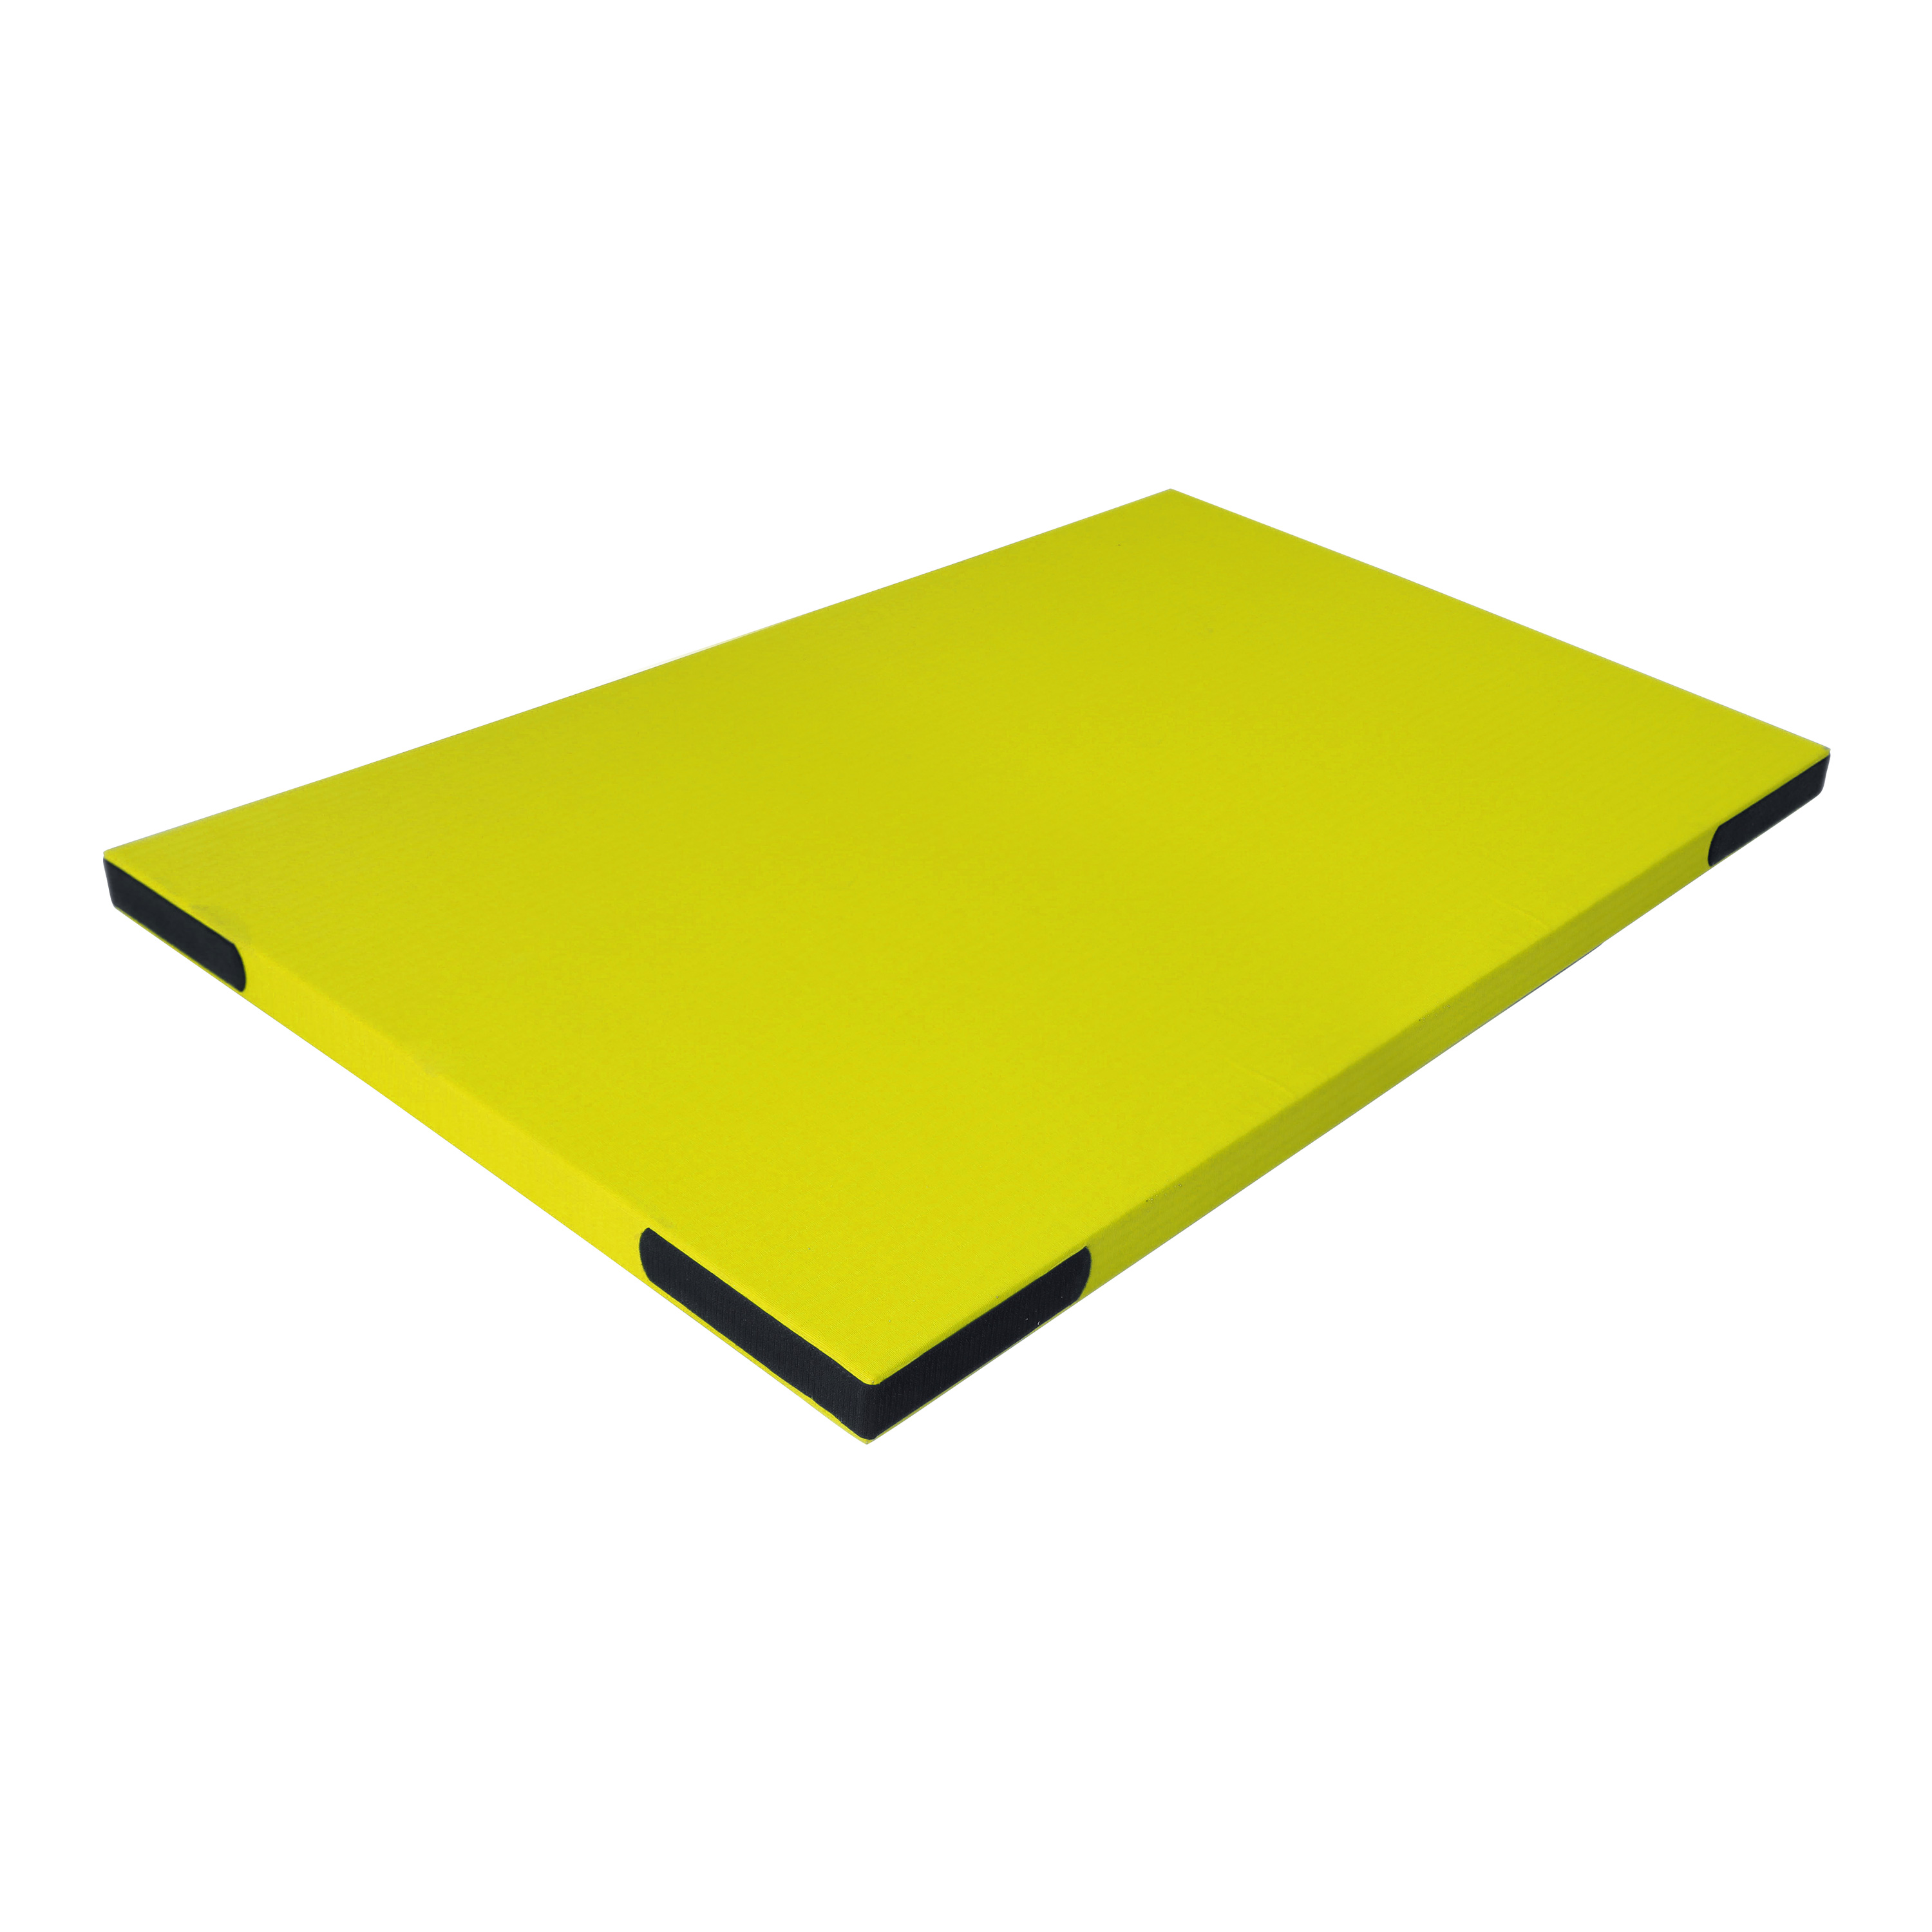 Fallschutzmatte 'Light' gelb mit Klett, 200 x 100 cm, 7,4 kg